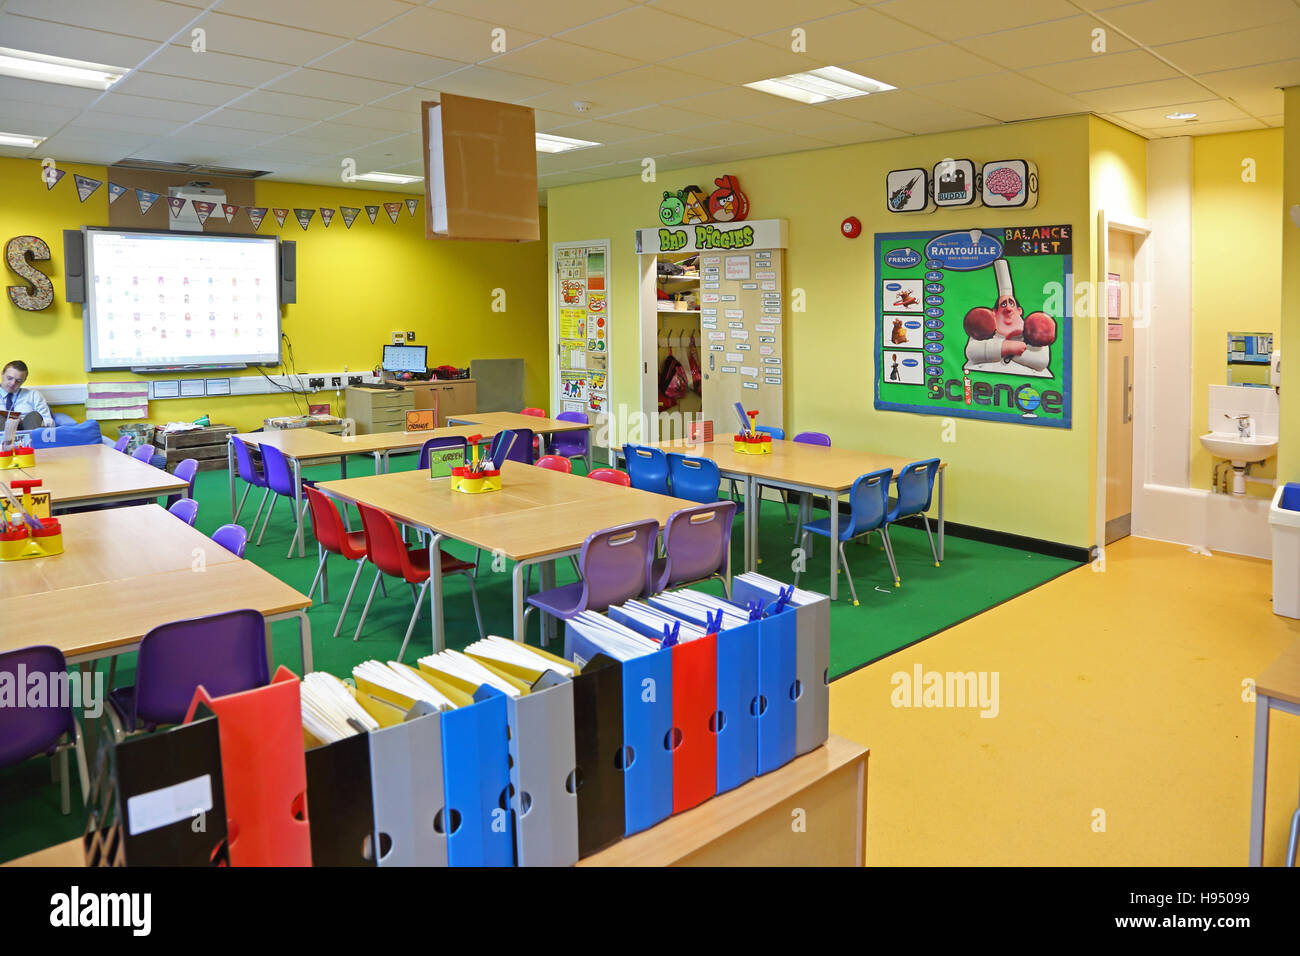 Innenansicht einer modernen Jahr 1 Schulklasse zeigt, Tische, Stühle, Computer-Bildschirm und Kunstwerke an Wänden in leuchtenden Farben Stockfoto